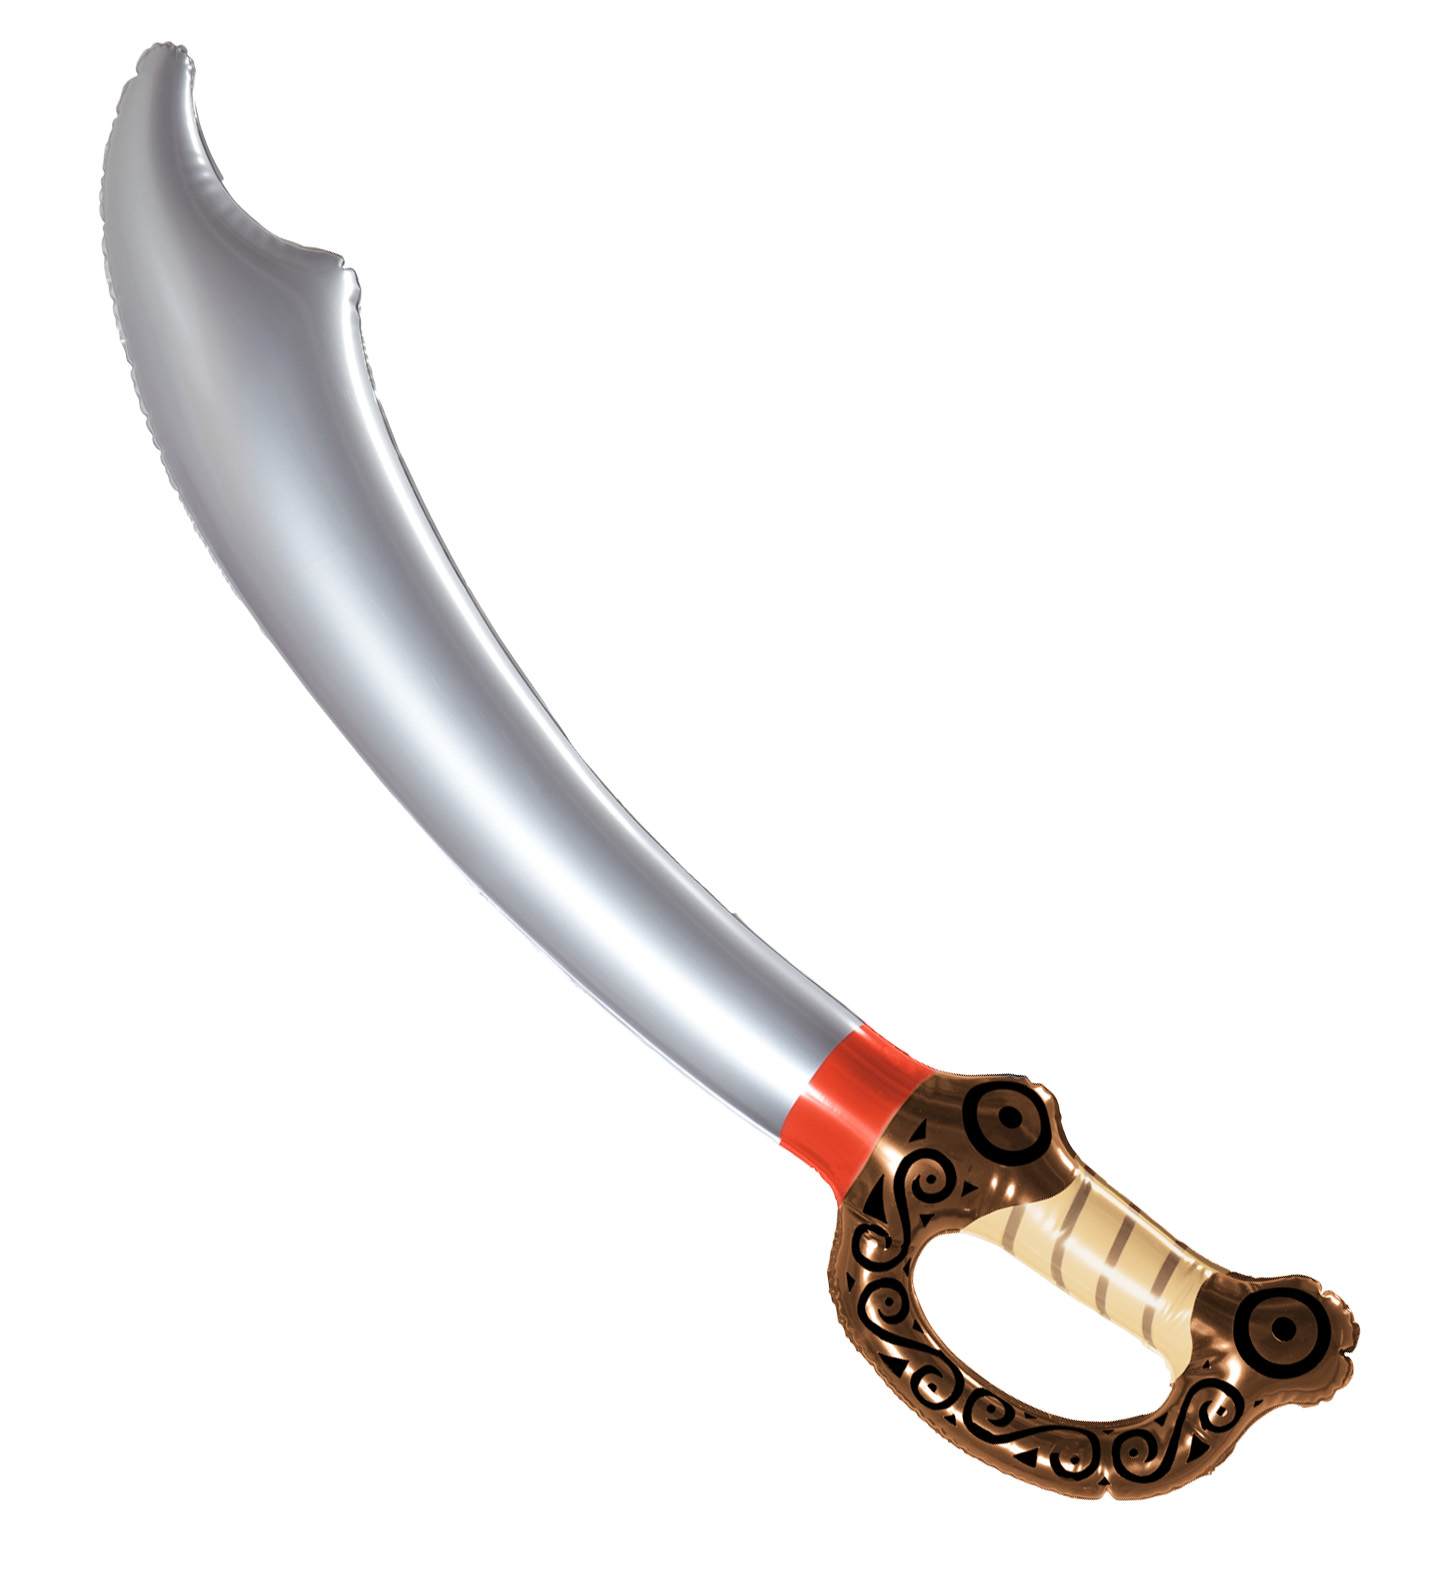 Piratenschwert Piratensäbel Piraten Schwert aufblasbares Schwert Pirat Säbel 